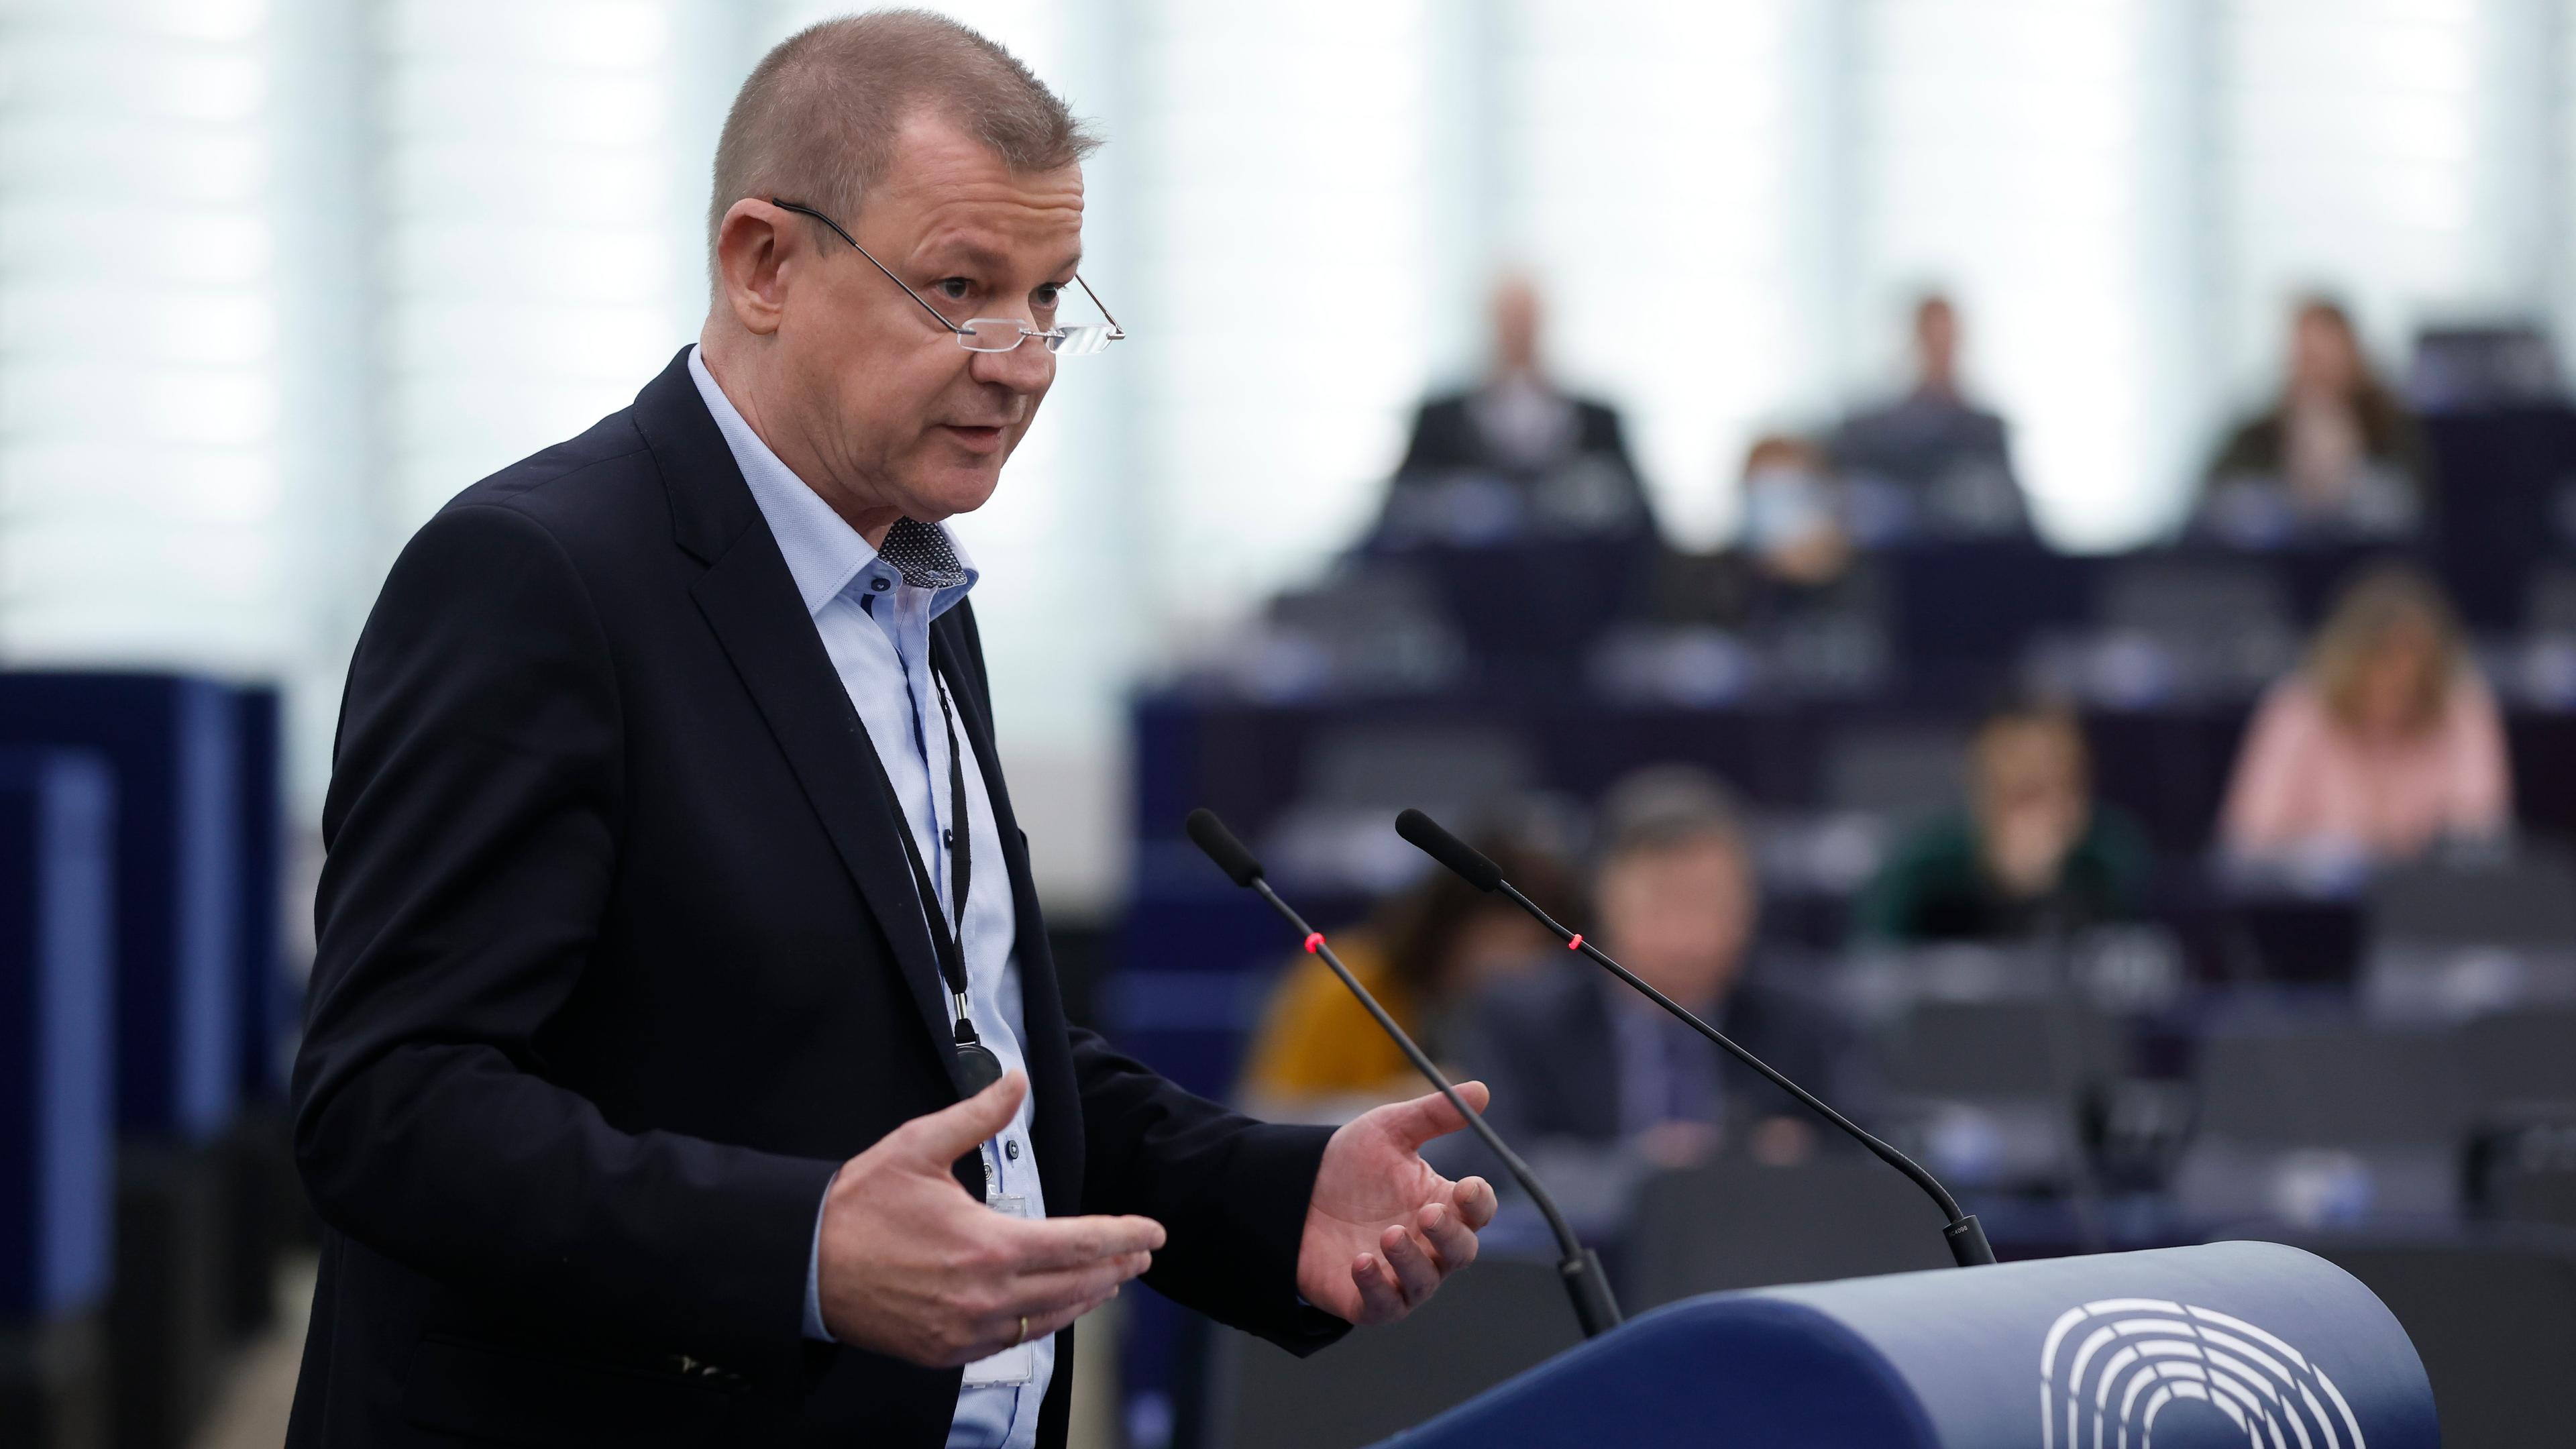 Markus Pieper, Mitglied des Europäischen Parlaments, hält im Plenarsaal des EU-Parlaments eine Rede.